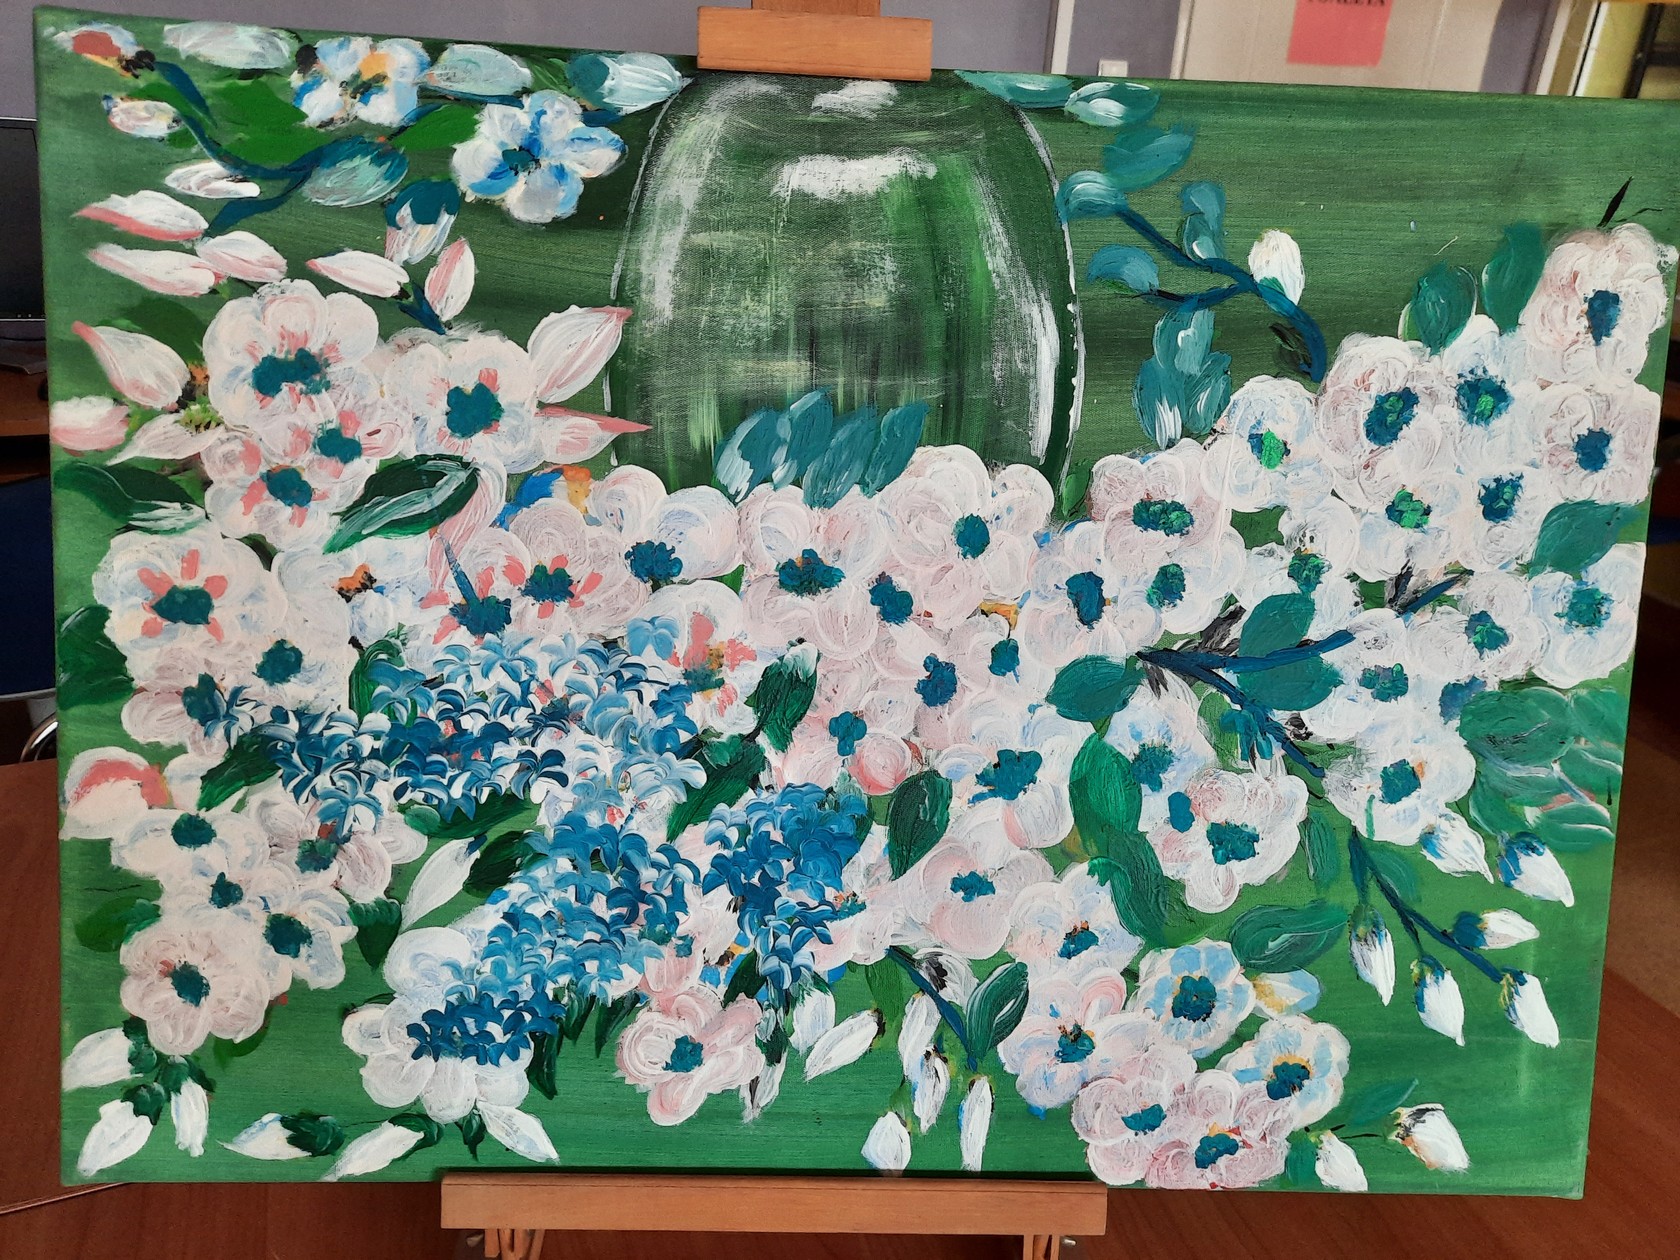 Obraz - Kwiaty w odcieniach bieli i błękitu w wazonie na zielonym tle.